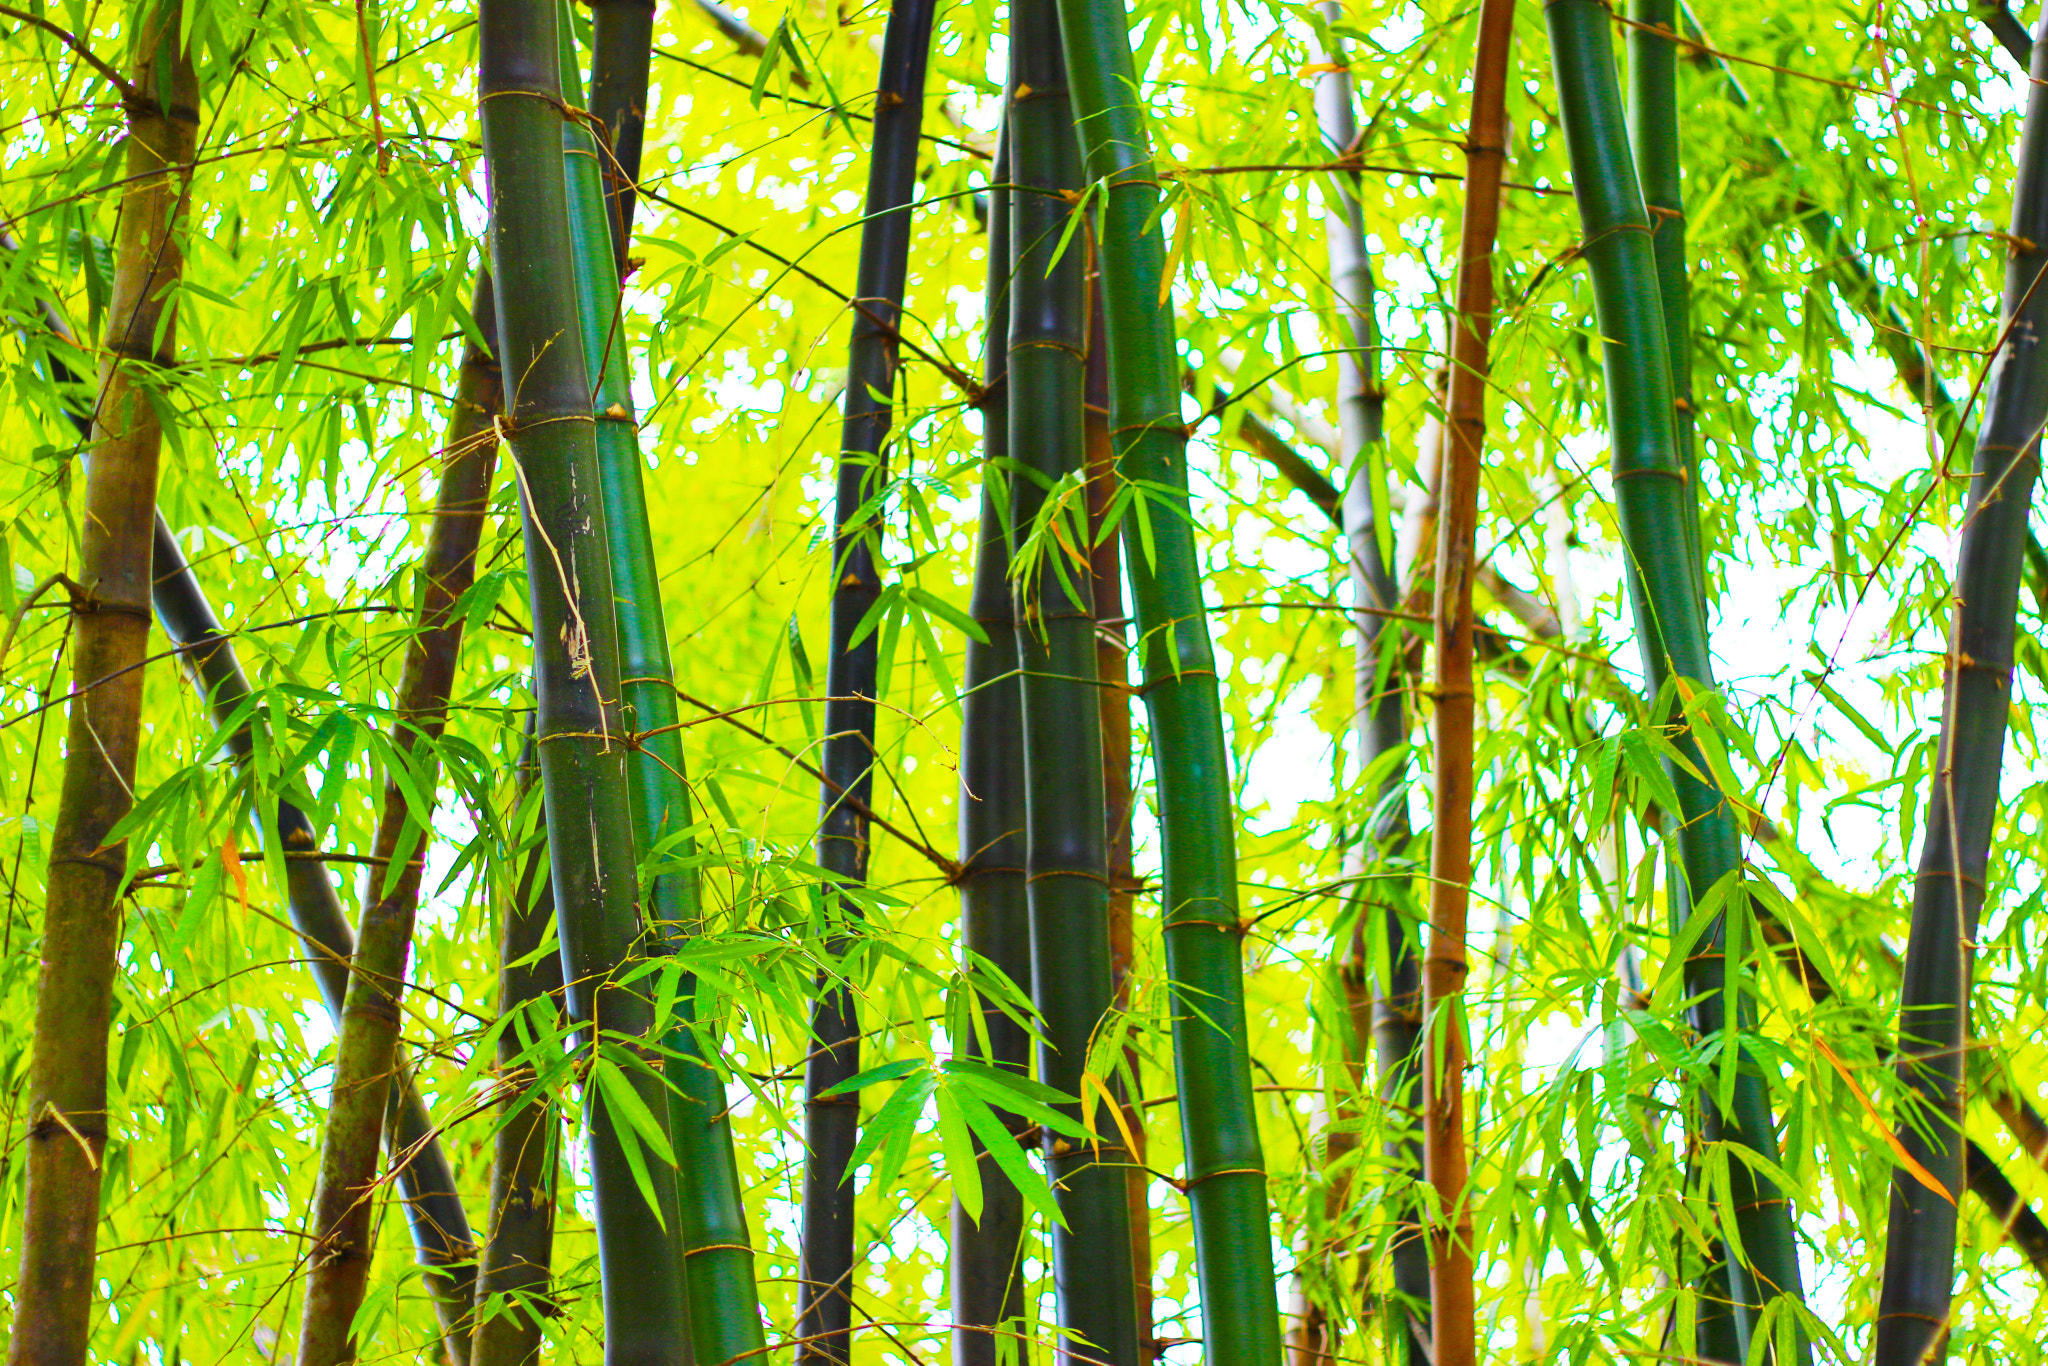 Canon EOS 600D (Rebel EOS T3i / EOS Kiss X5) + Canon EF 50mm F1.8 II sample photo. Bamboo garden photography